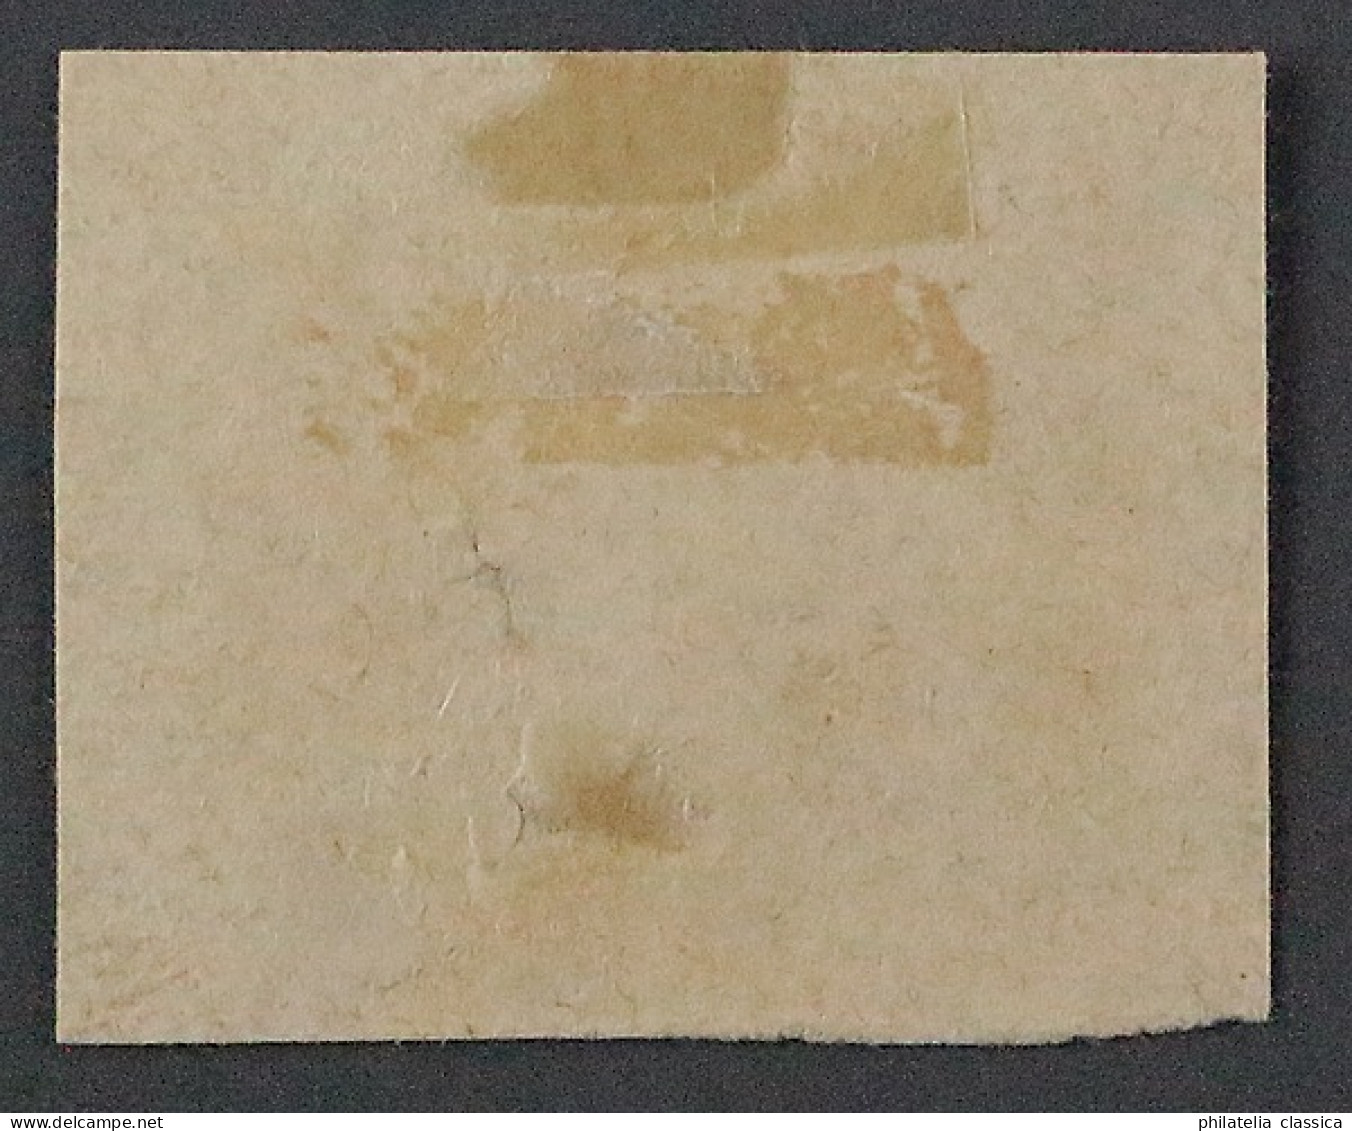 Dt. Reich 12, Ziffer 10 Gr. Briefstück POSTSTEMPEL CONSTANZ, Attest KW 1800,- € - Gebraucht